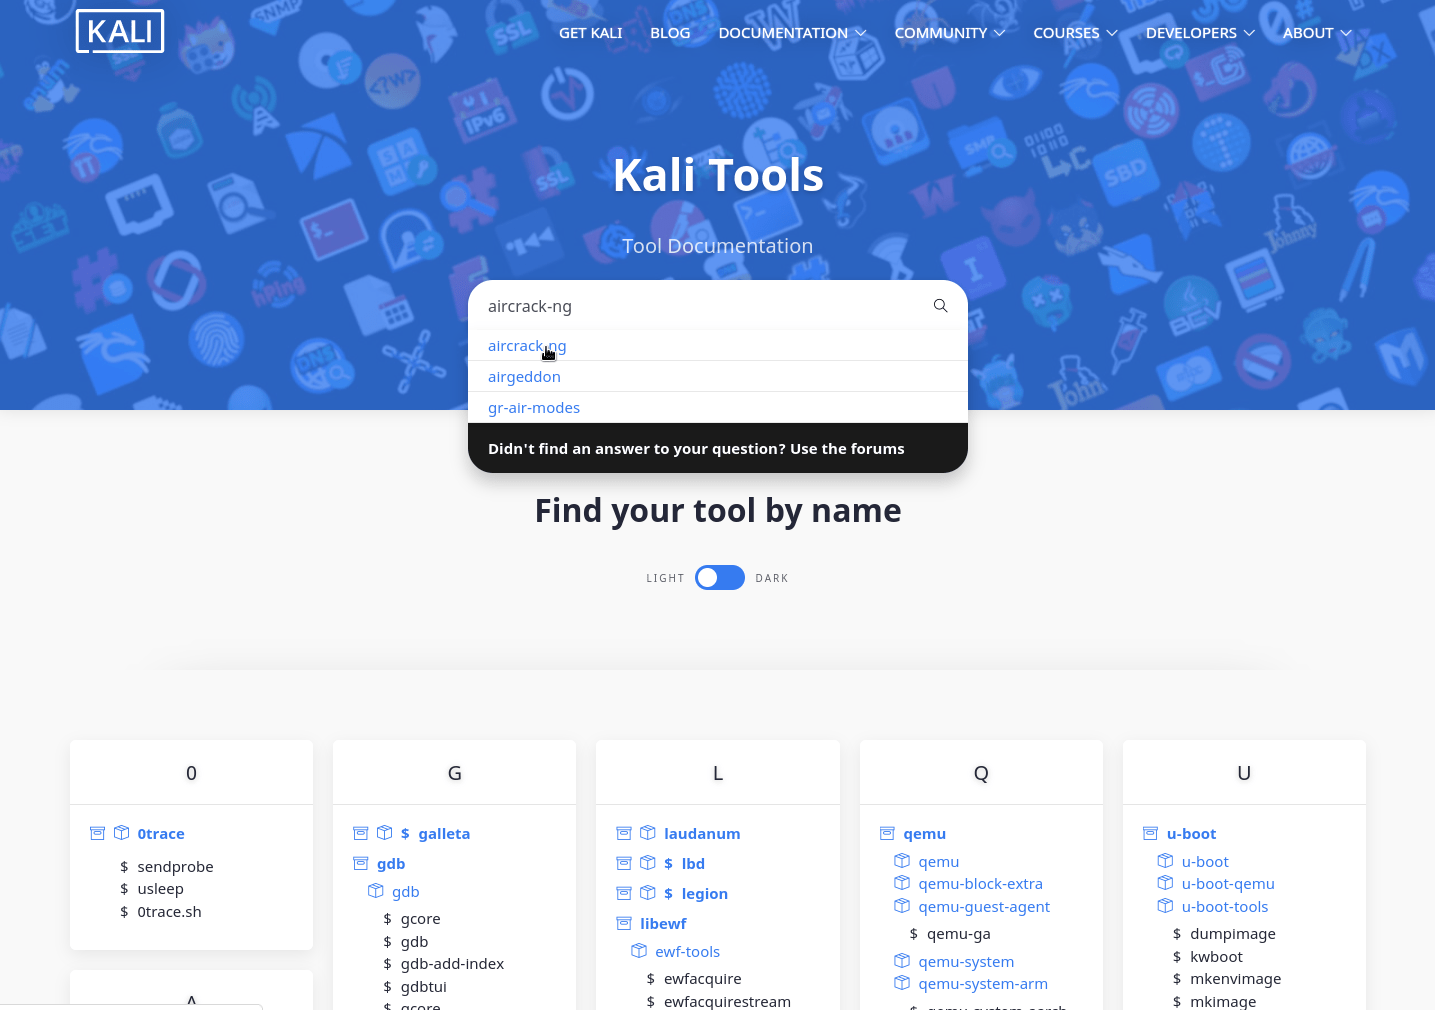 Kali Linux 2021.3 Release (OpenSSL, Kali-Tools, Kali Live VM Support, Kali NetHunter Smartwatch) | Kali Linux Blog